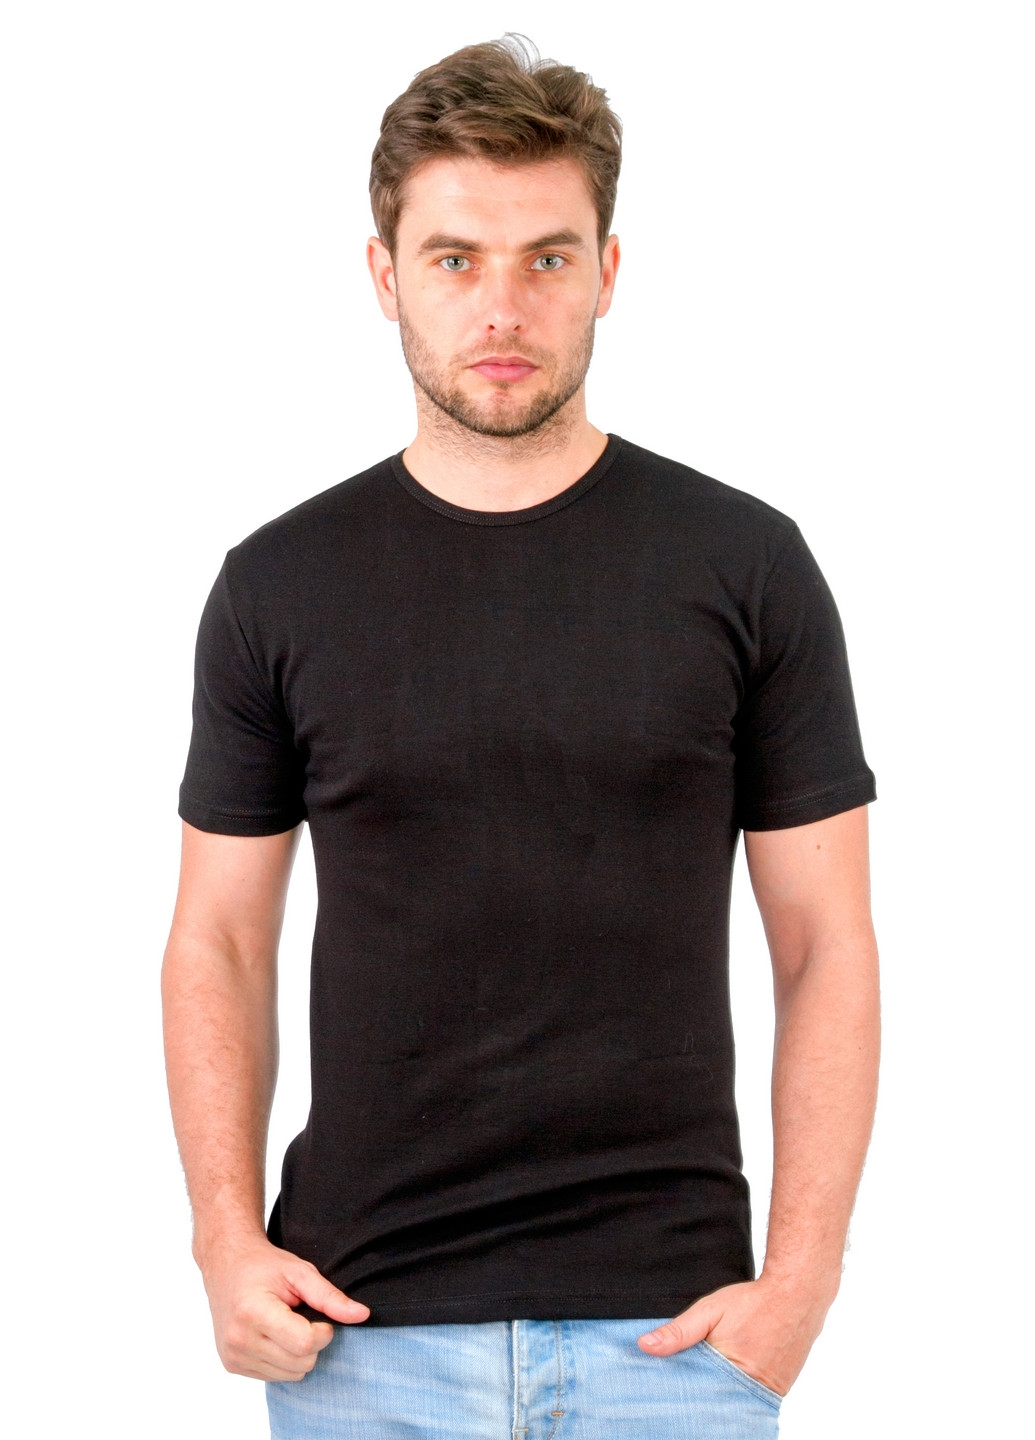 Черная футболка мужская Наталюкс 21-1302